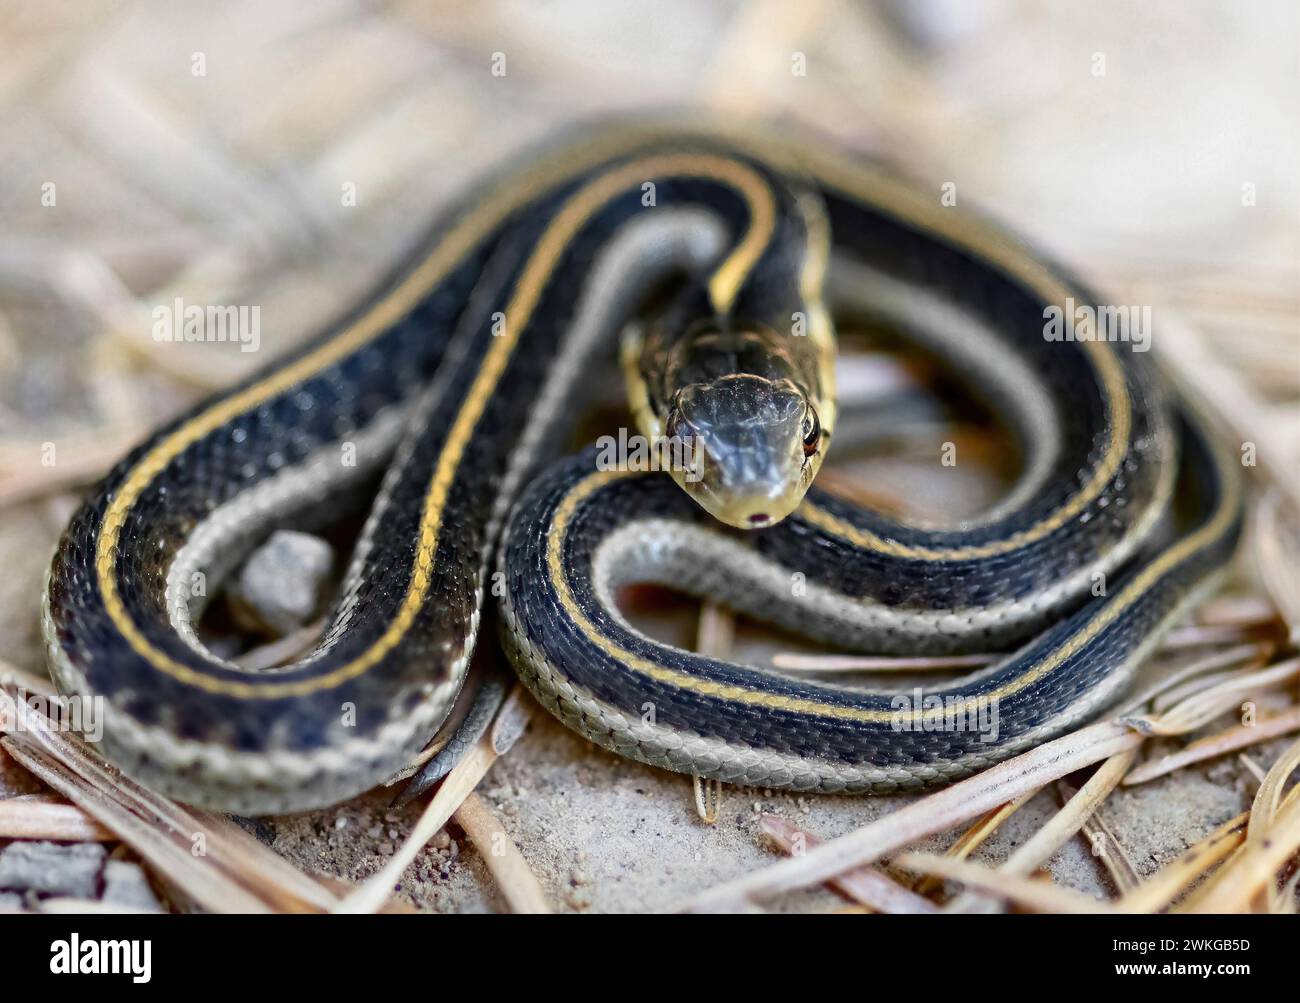 Forme intergrade ou serpent-Garrette aquatique juvénile dans une posture de défense typique. MT. Tamalpais, Comté de Marin, Californie, États-Unis. Banque D'Images